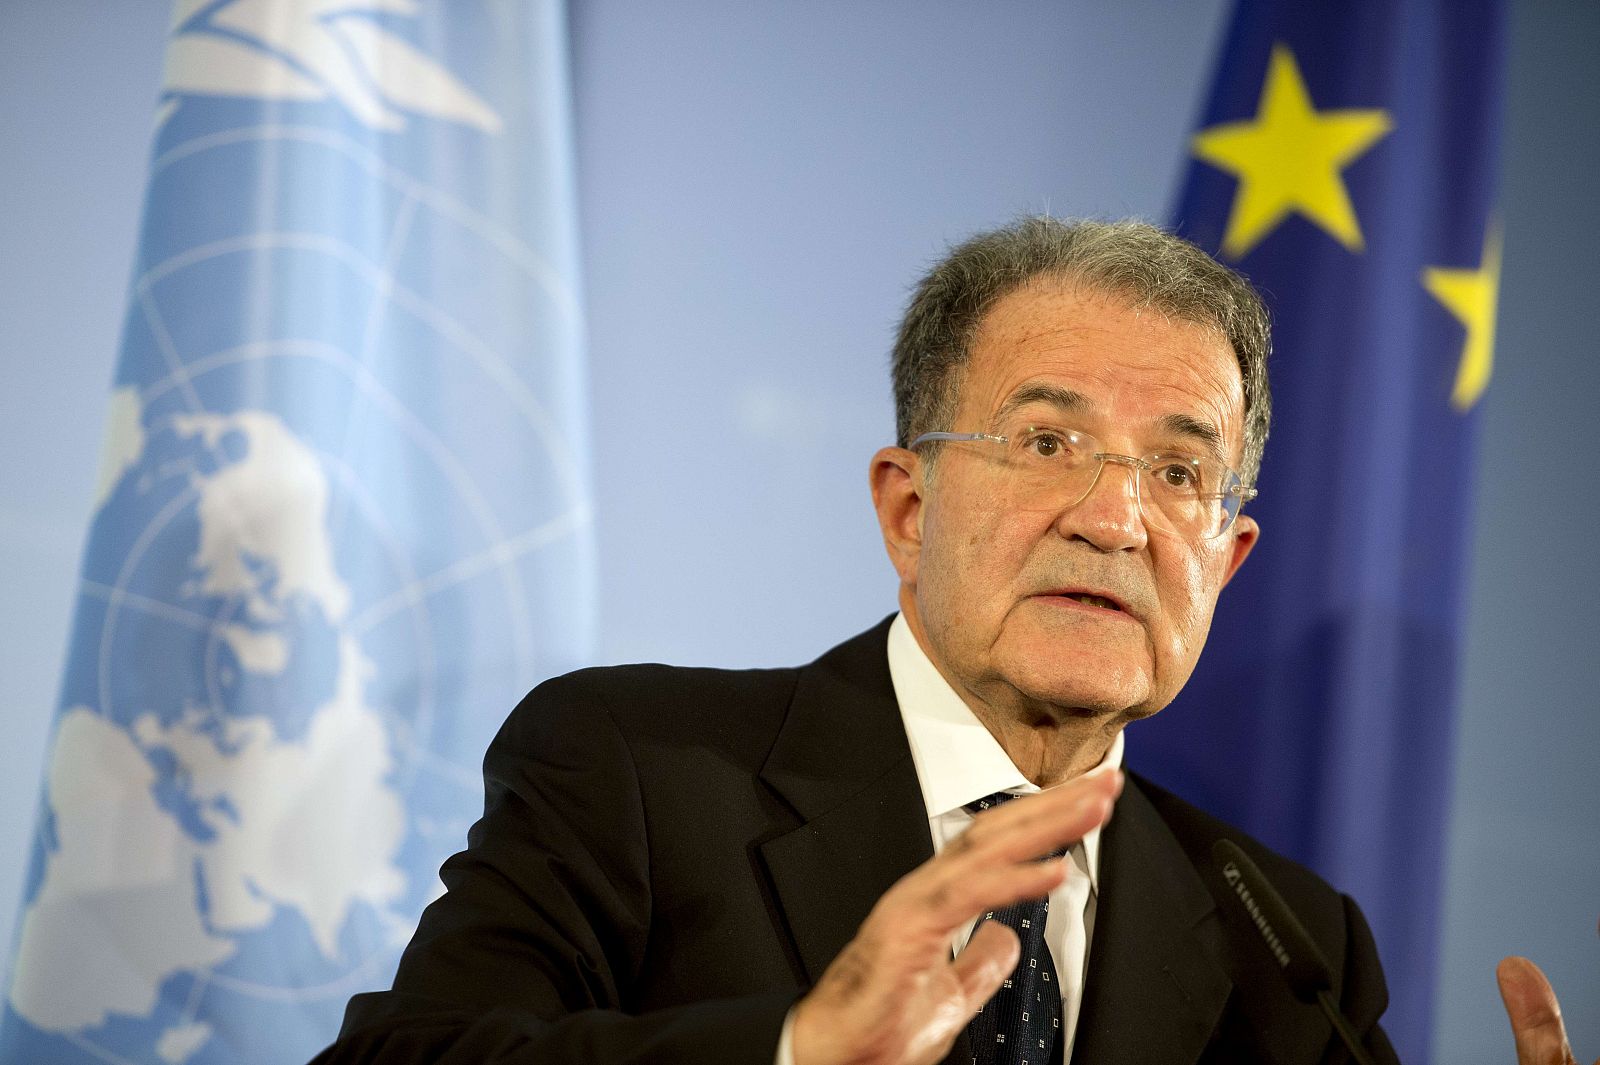 Romano Prodi.